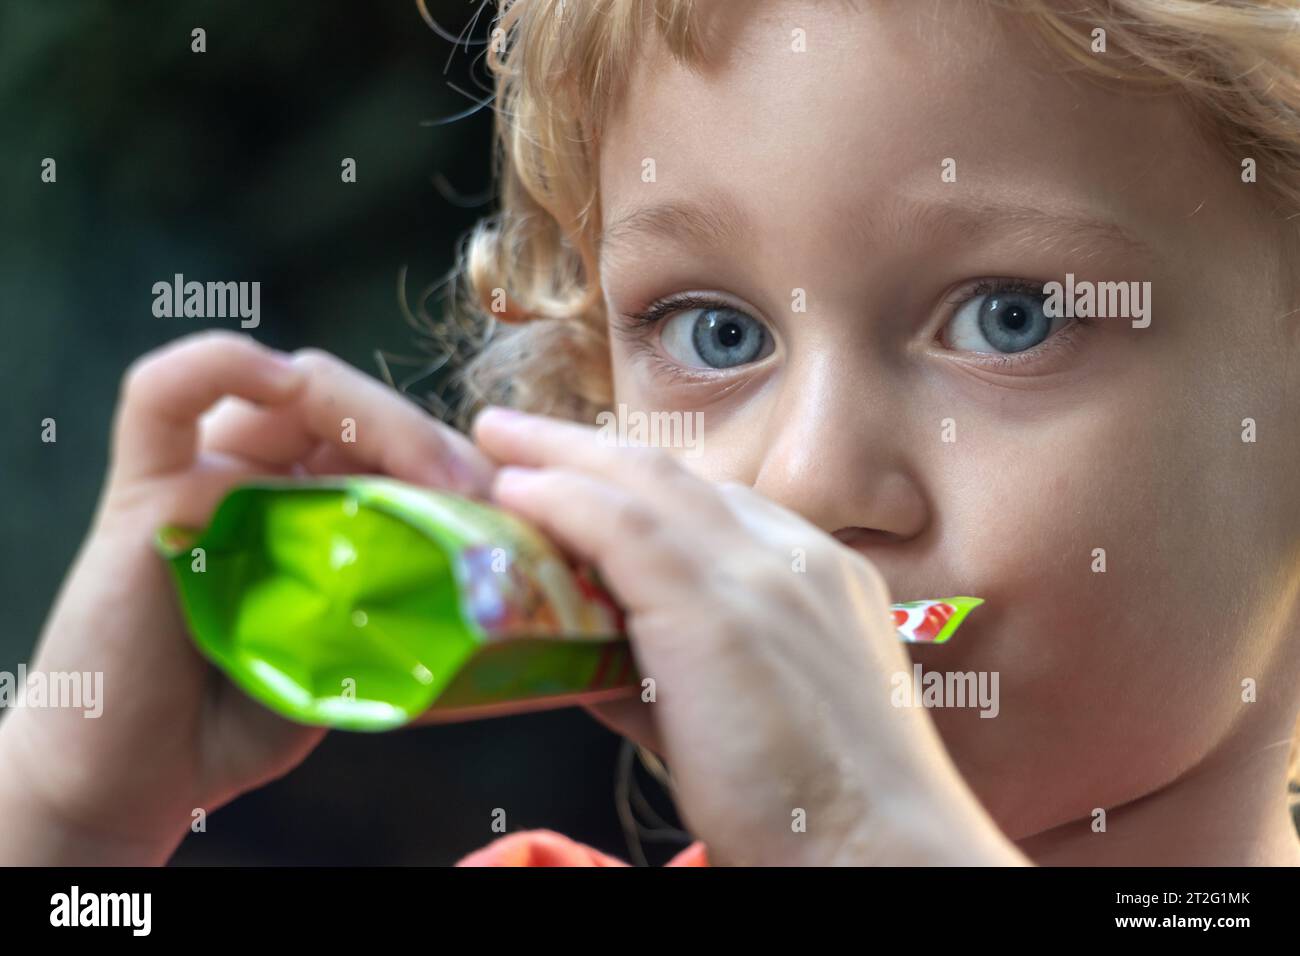 Porträt eines Jungen, der flüssiges Essen aus einem kleinen Beutel trinkt Stockfoto